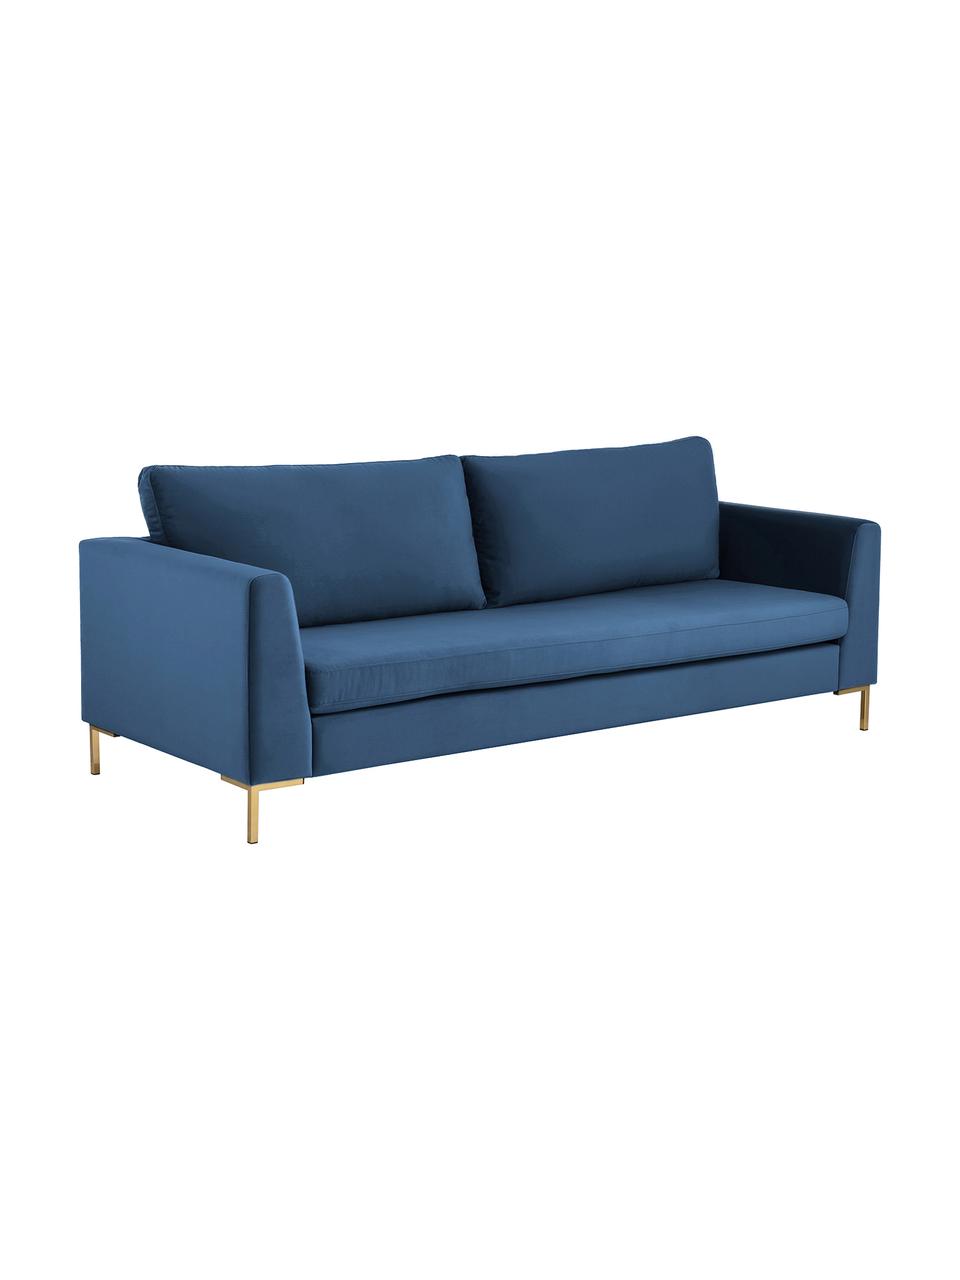 Samt-Sofa Luna (3-Sitzer) in Blau mit Metall-Füssen, Bezug: Samt (Polyester) Der hoch, Gestell: Massives Buchenholz, Samt Blau, Gold, B 230 x T 95 cm